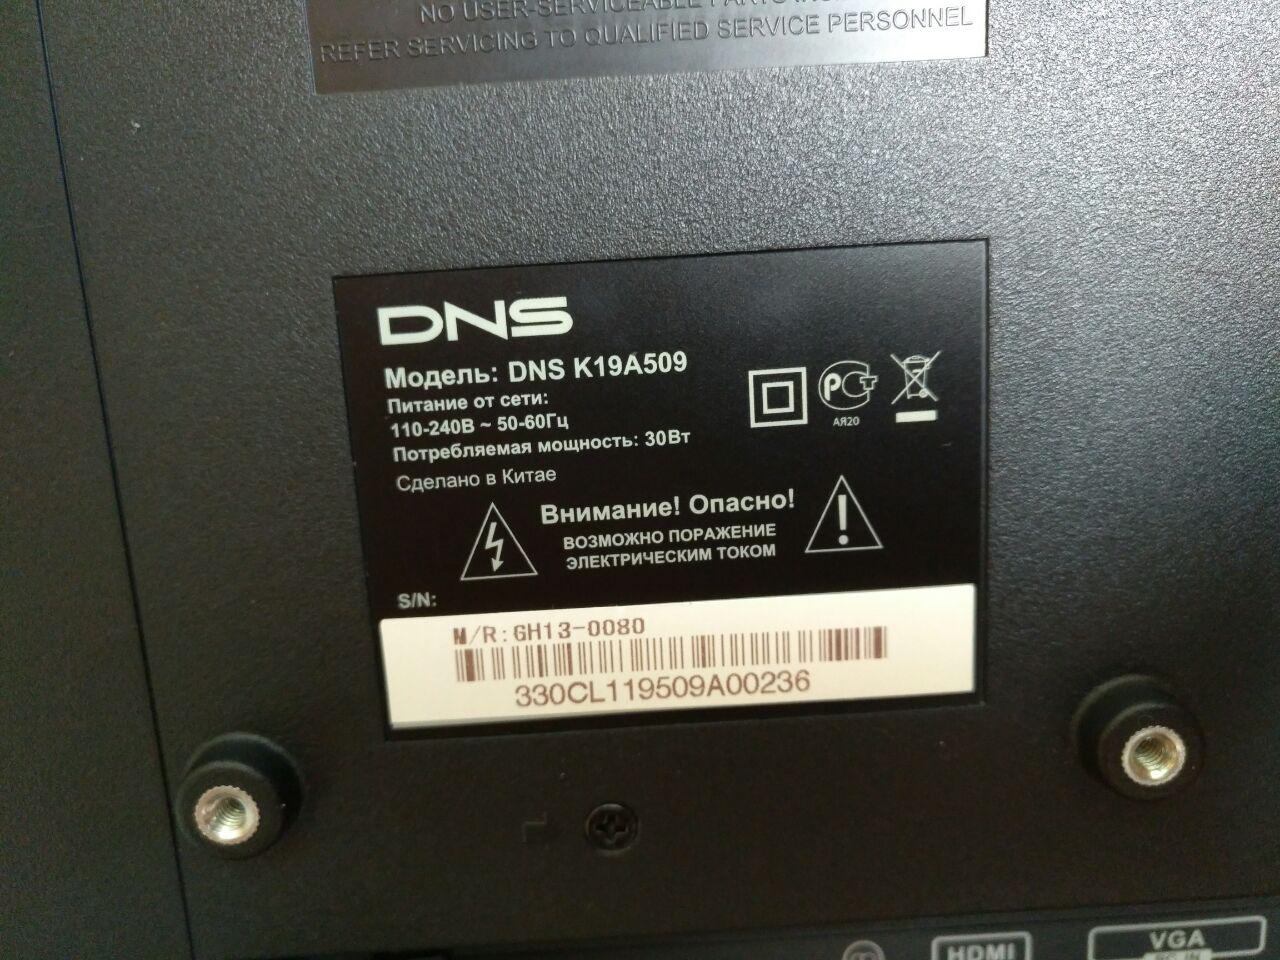 Днс телевизоры маленькие. Led телевизор DNS e19a00.. Телевизор DNS k19a509 19". Телевизор марки ДНС.